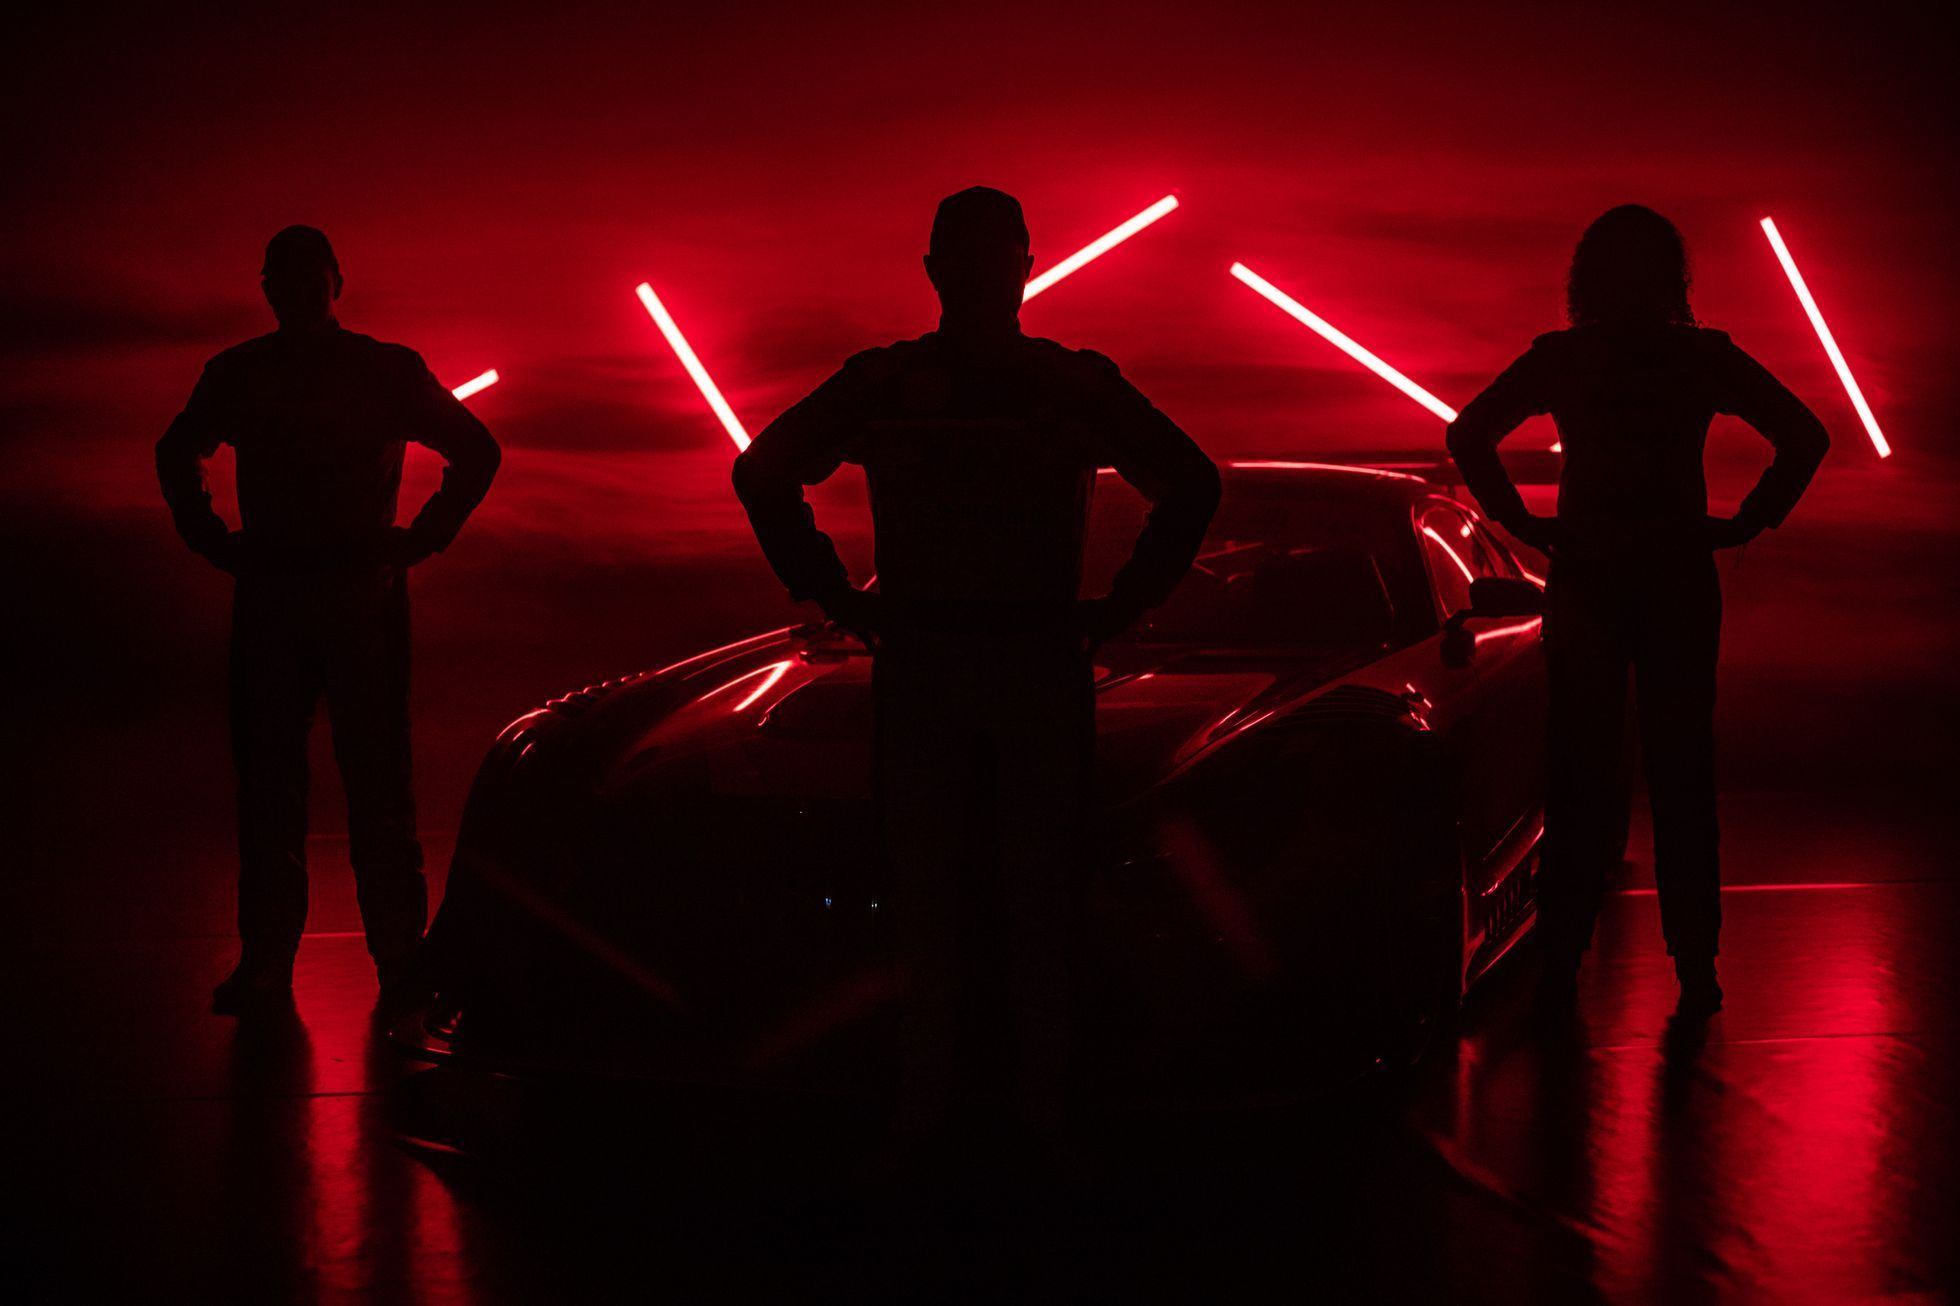 David Vršecký, Tomáš Enge a Aliyyah Koloc při premiéře Mercedes-AMG GT3 týmu Buggyra pro seriál China GT